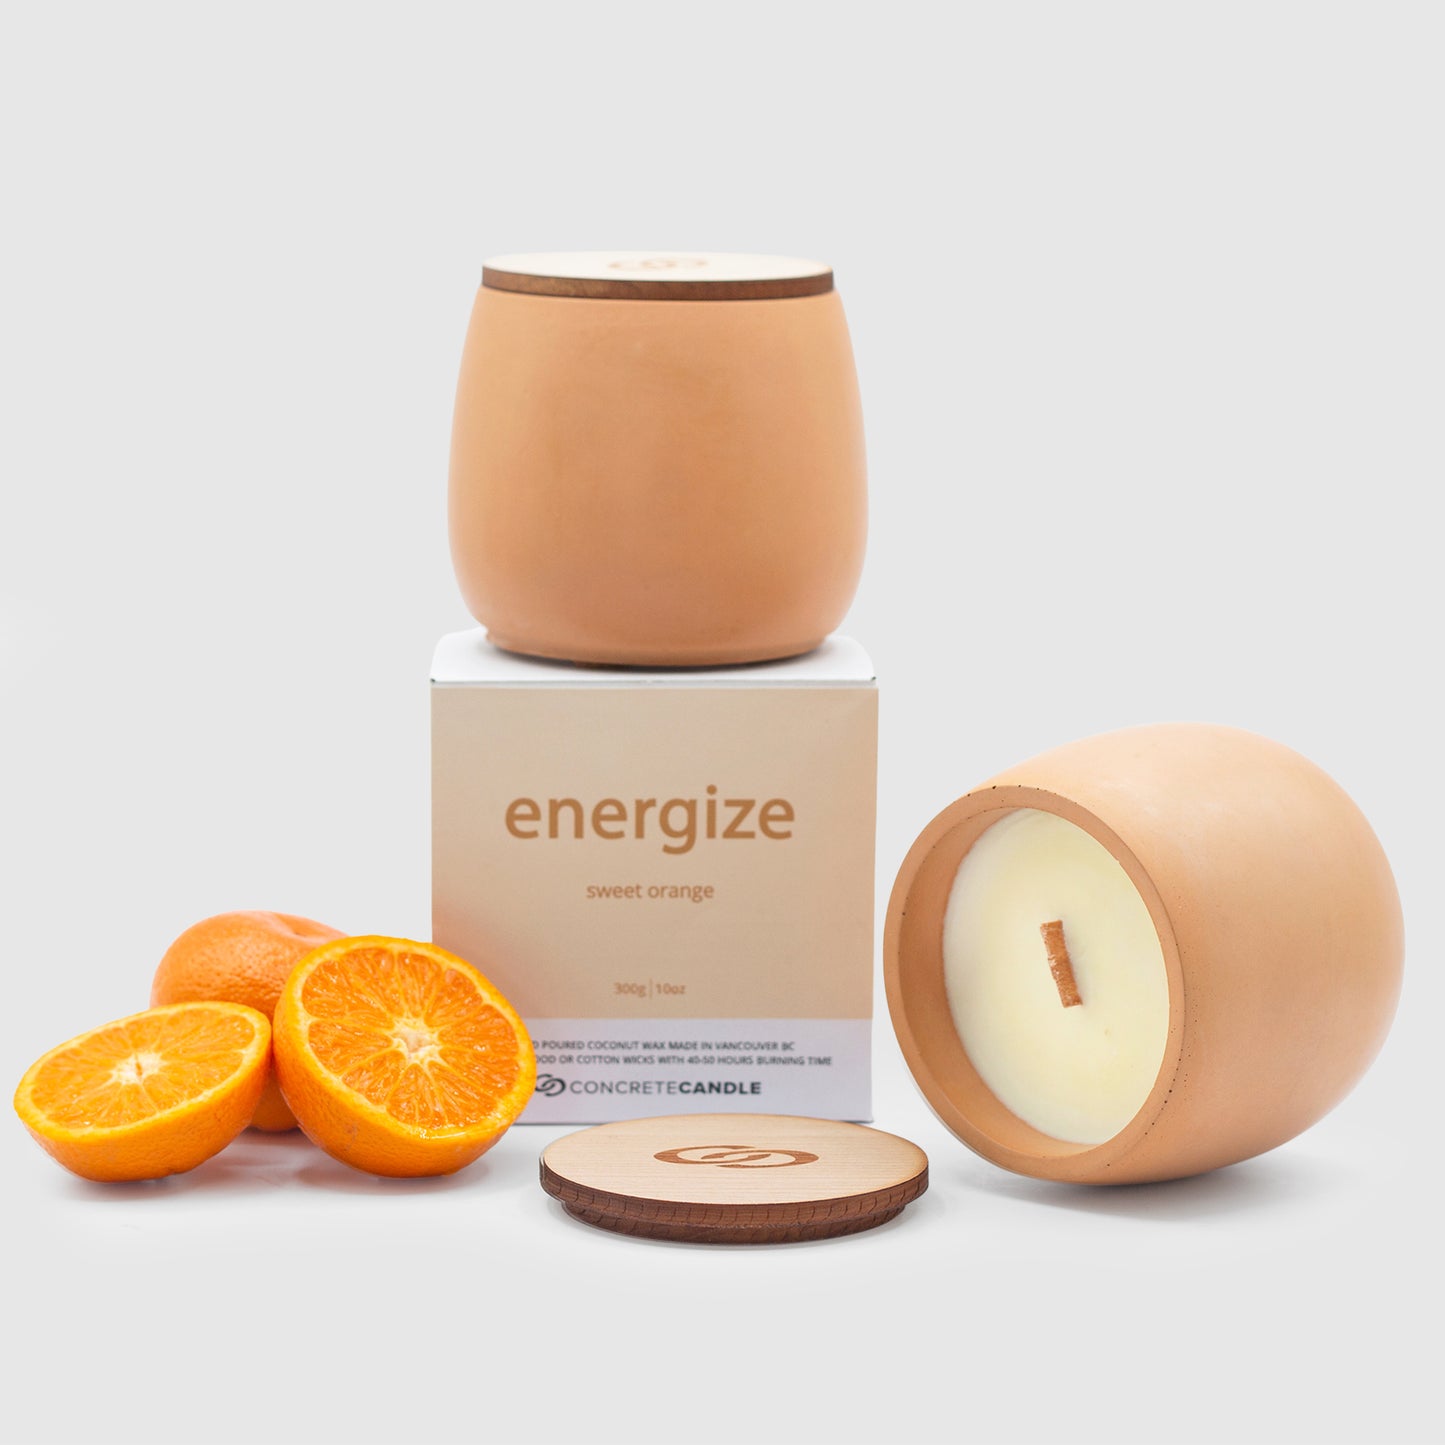 energize |  sweet orange